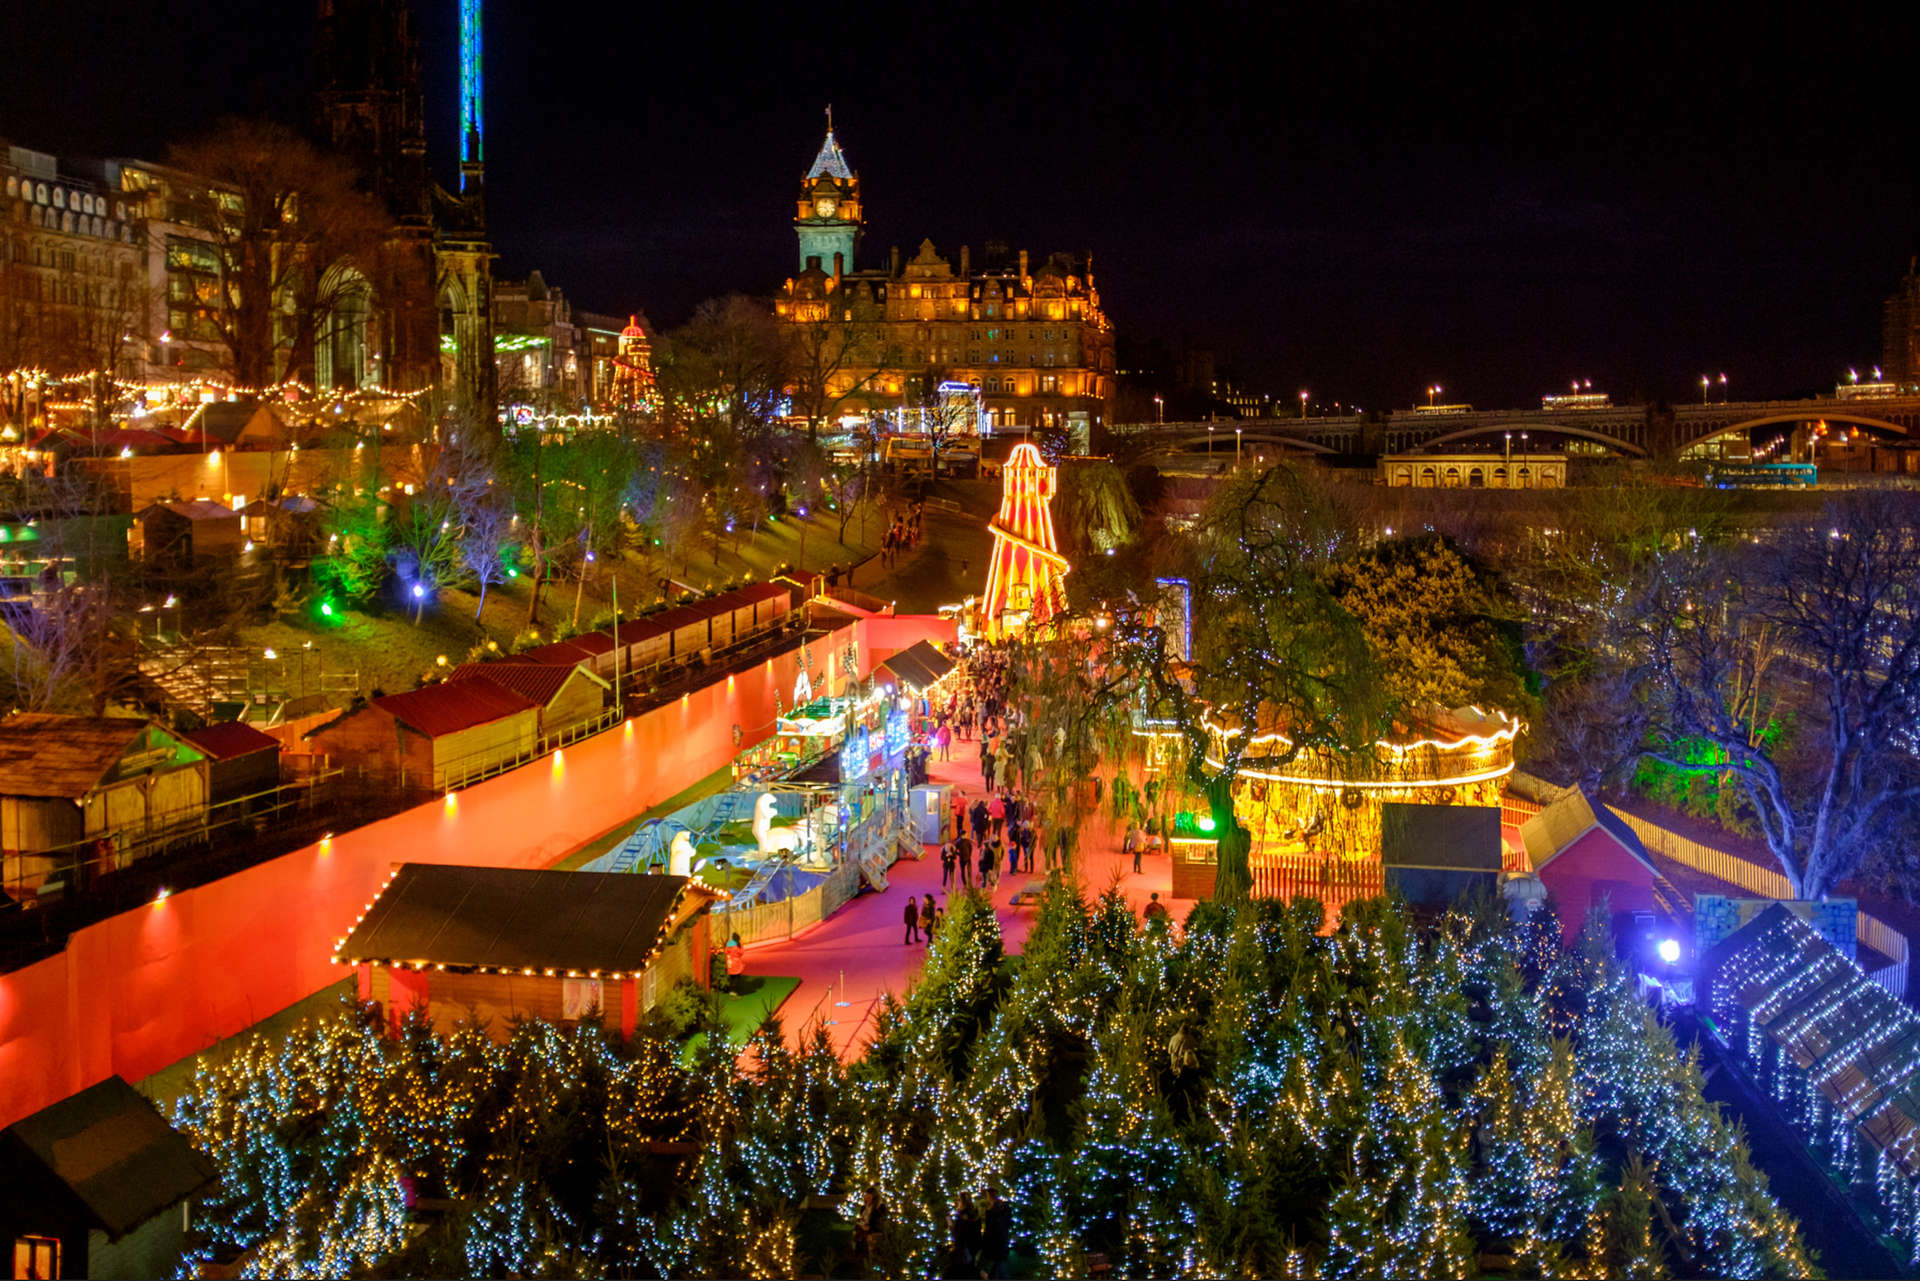 Durante il periodo natalizio la capitale scozzese viene decorata con oranamenti natalizi